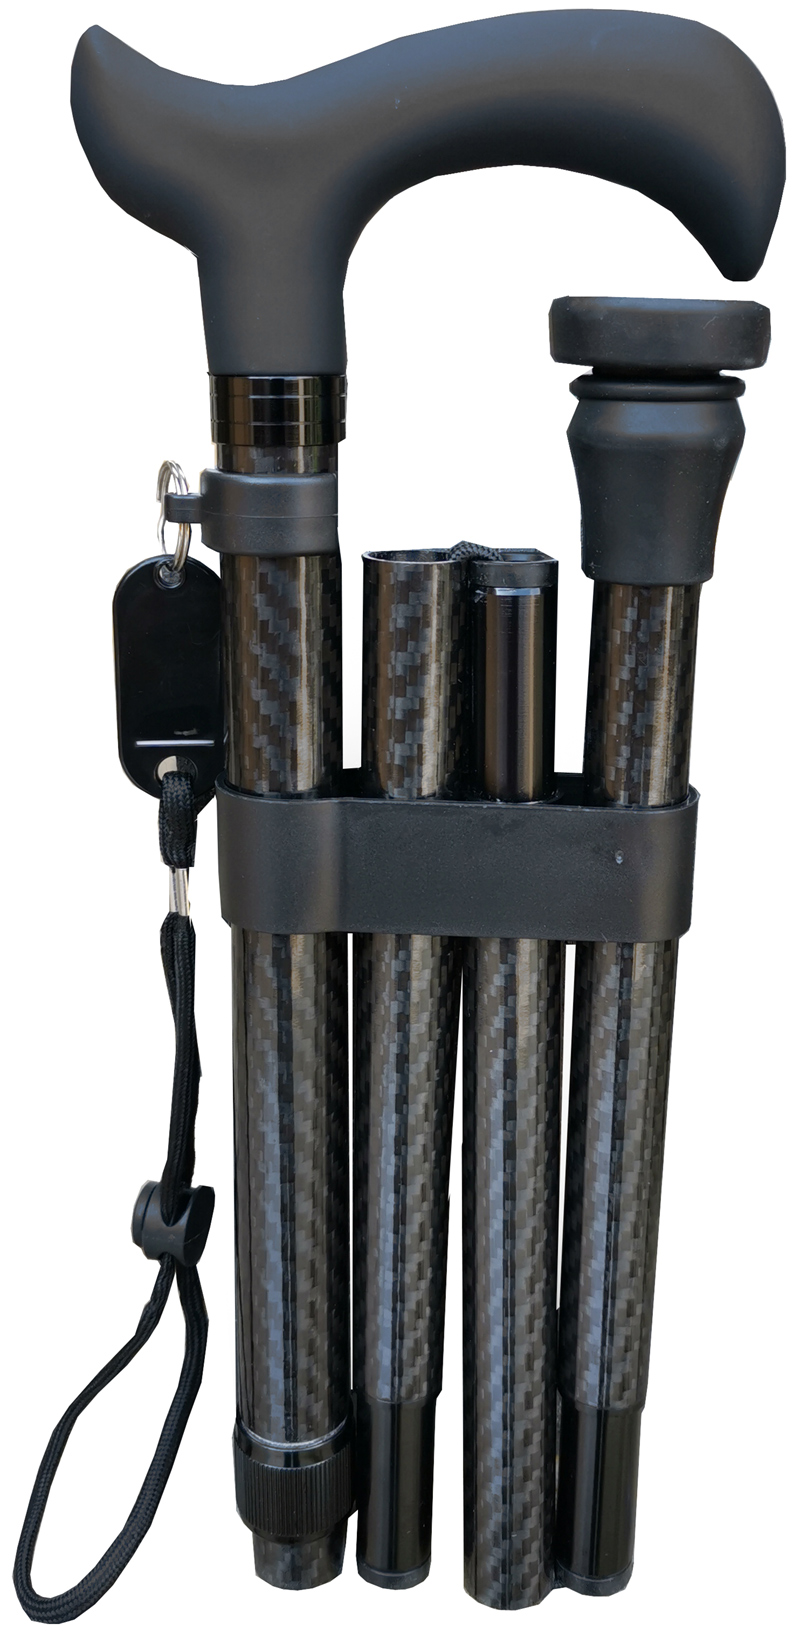 Deluxe Carbon Fibre 4-Part Folding Adjustable Walking Stick Cane